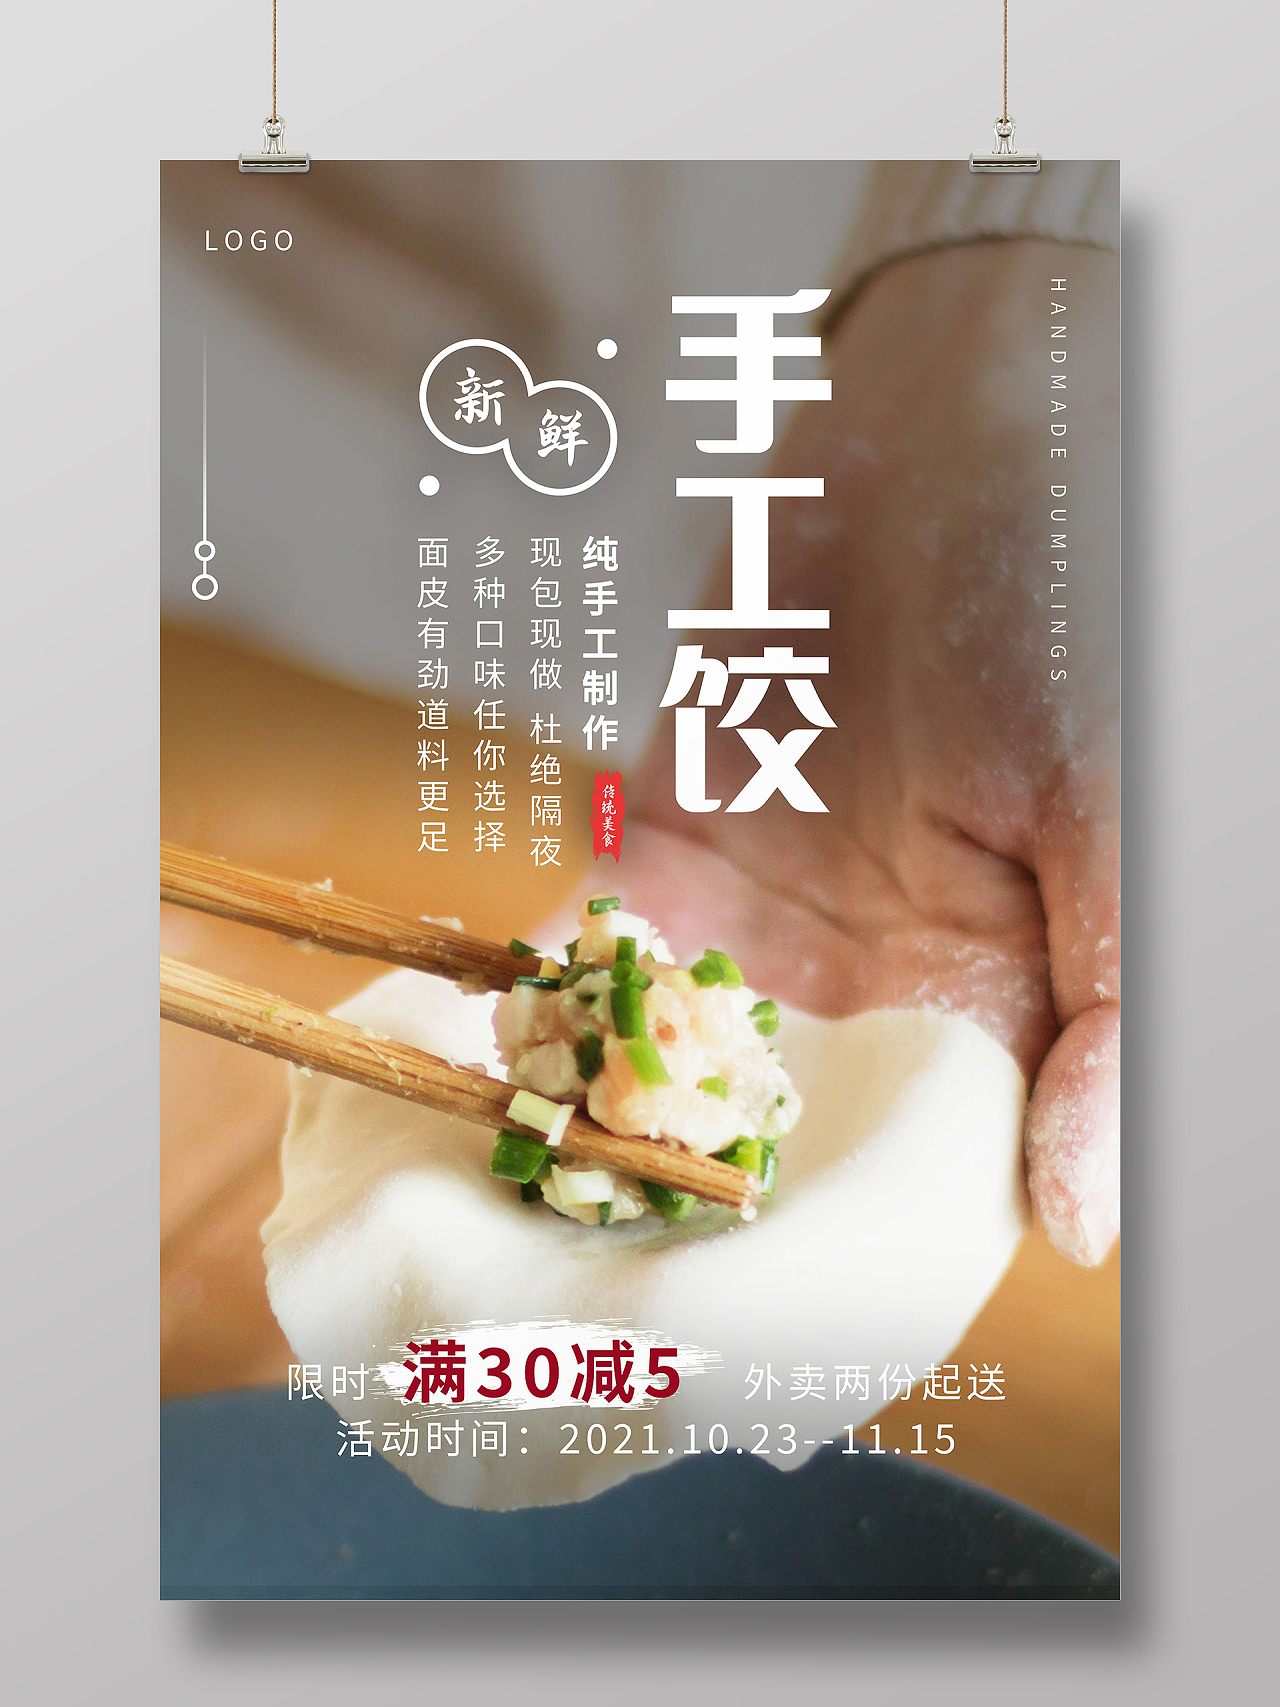 中国传统美食立冬吃饺子海报模板设计